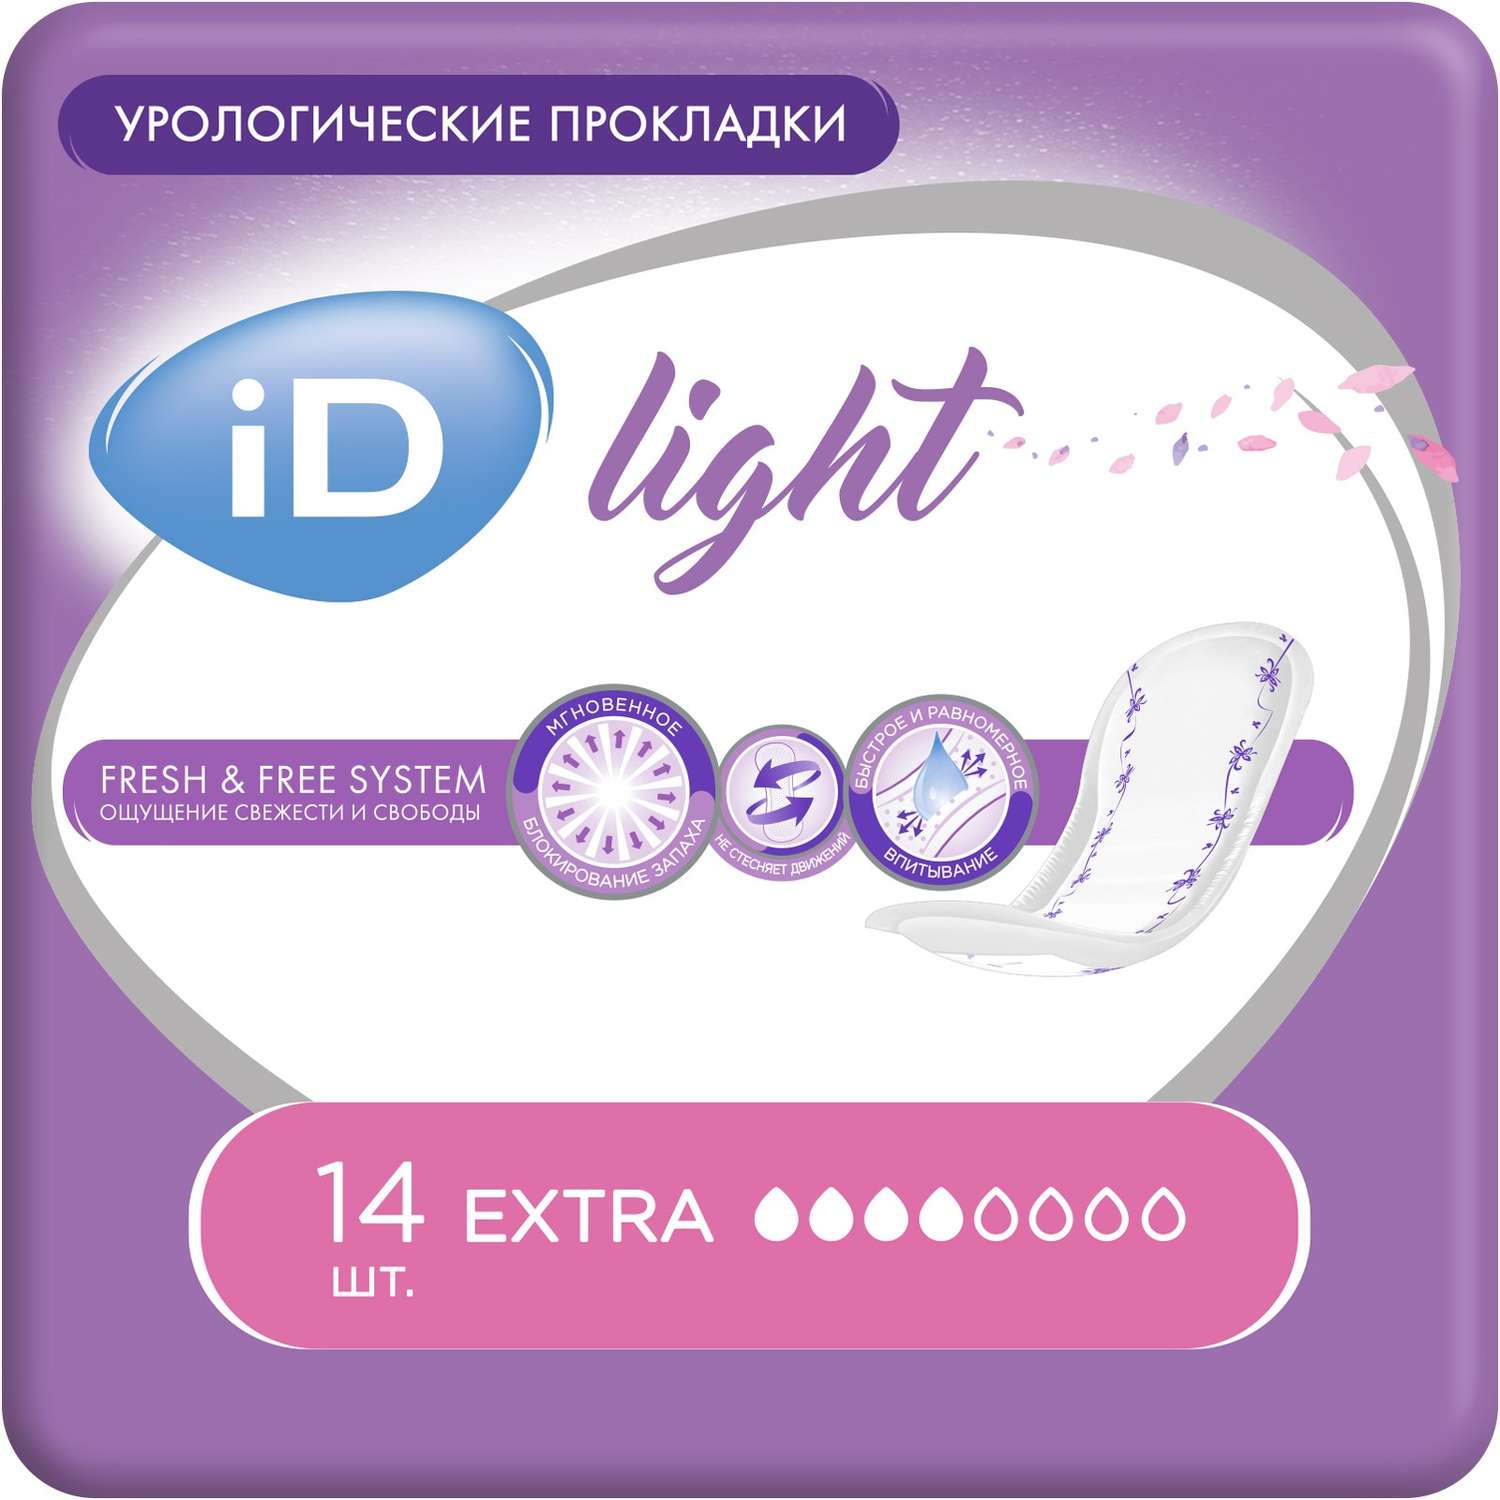 Прокладки урологические iD LIGHT Extra 14 шт. х3 упаковки - фото 1